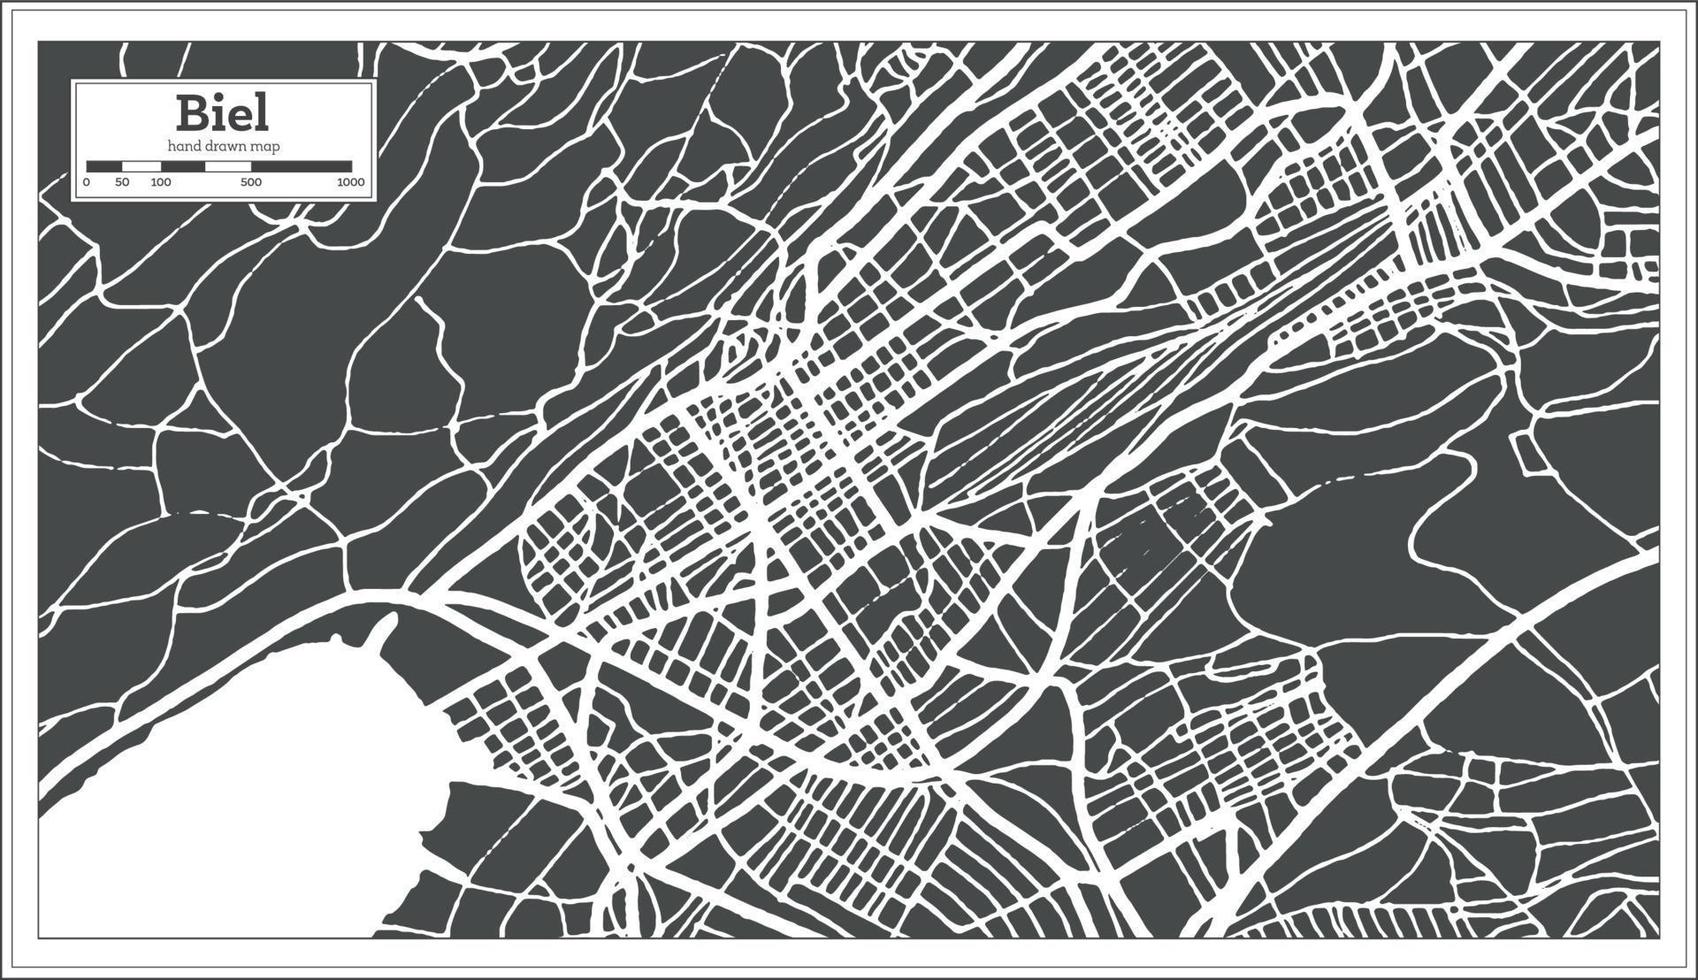 biel schweiz stad Karta i retro stil. översikt Karta. vektor